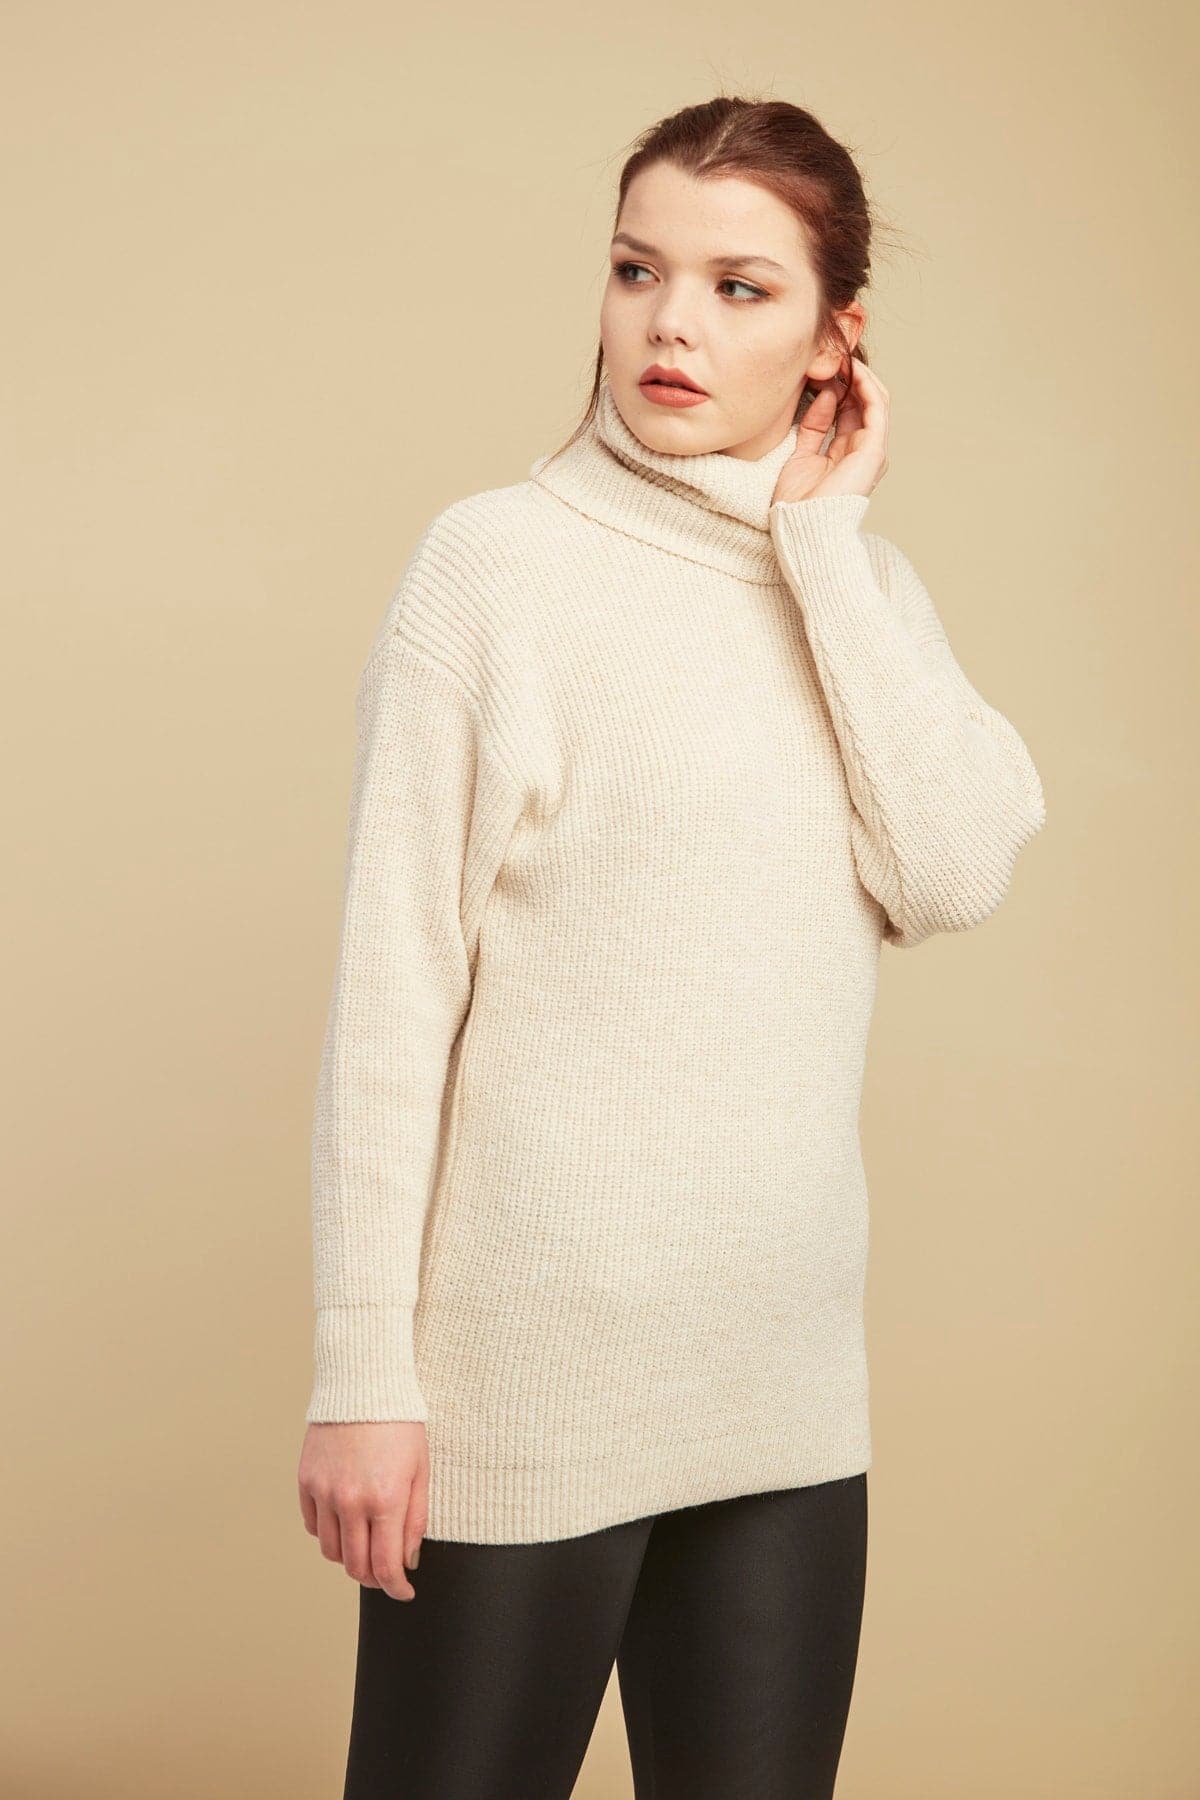 Women's Beige-Throated Knitwear Sweater